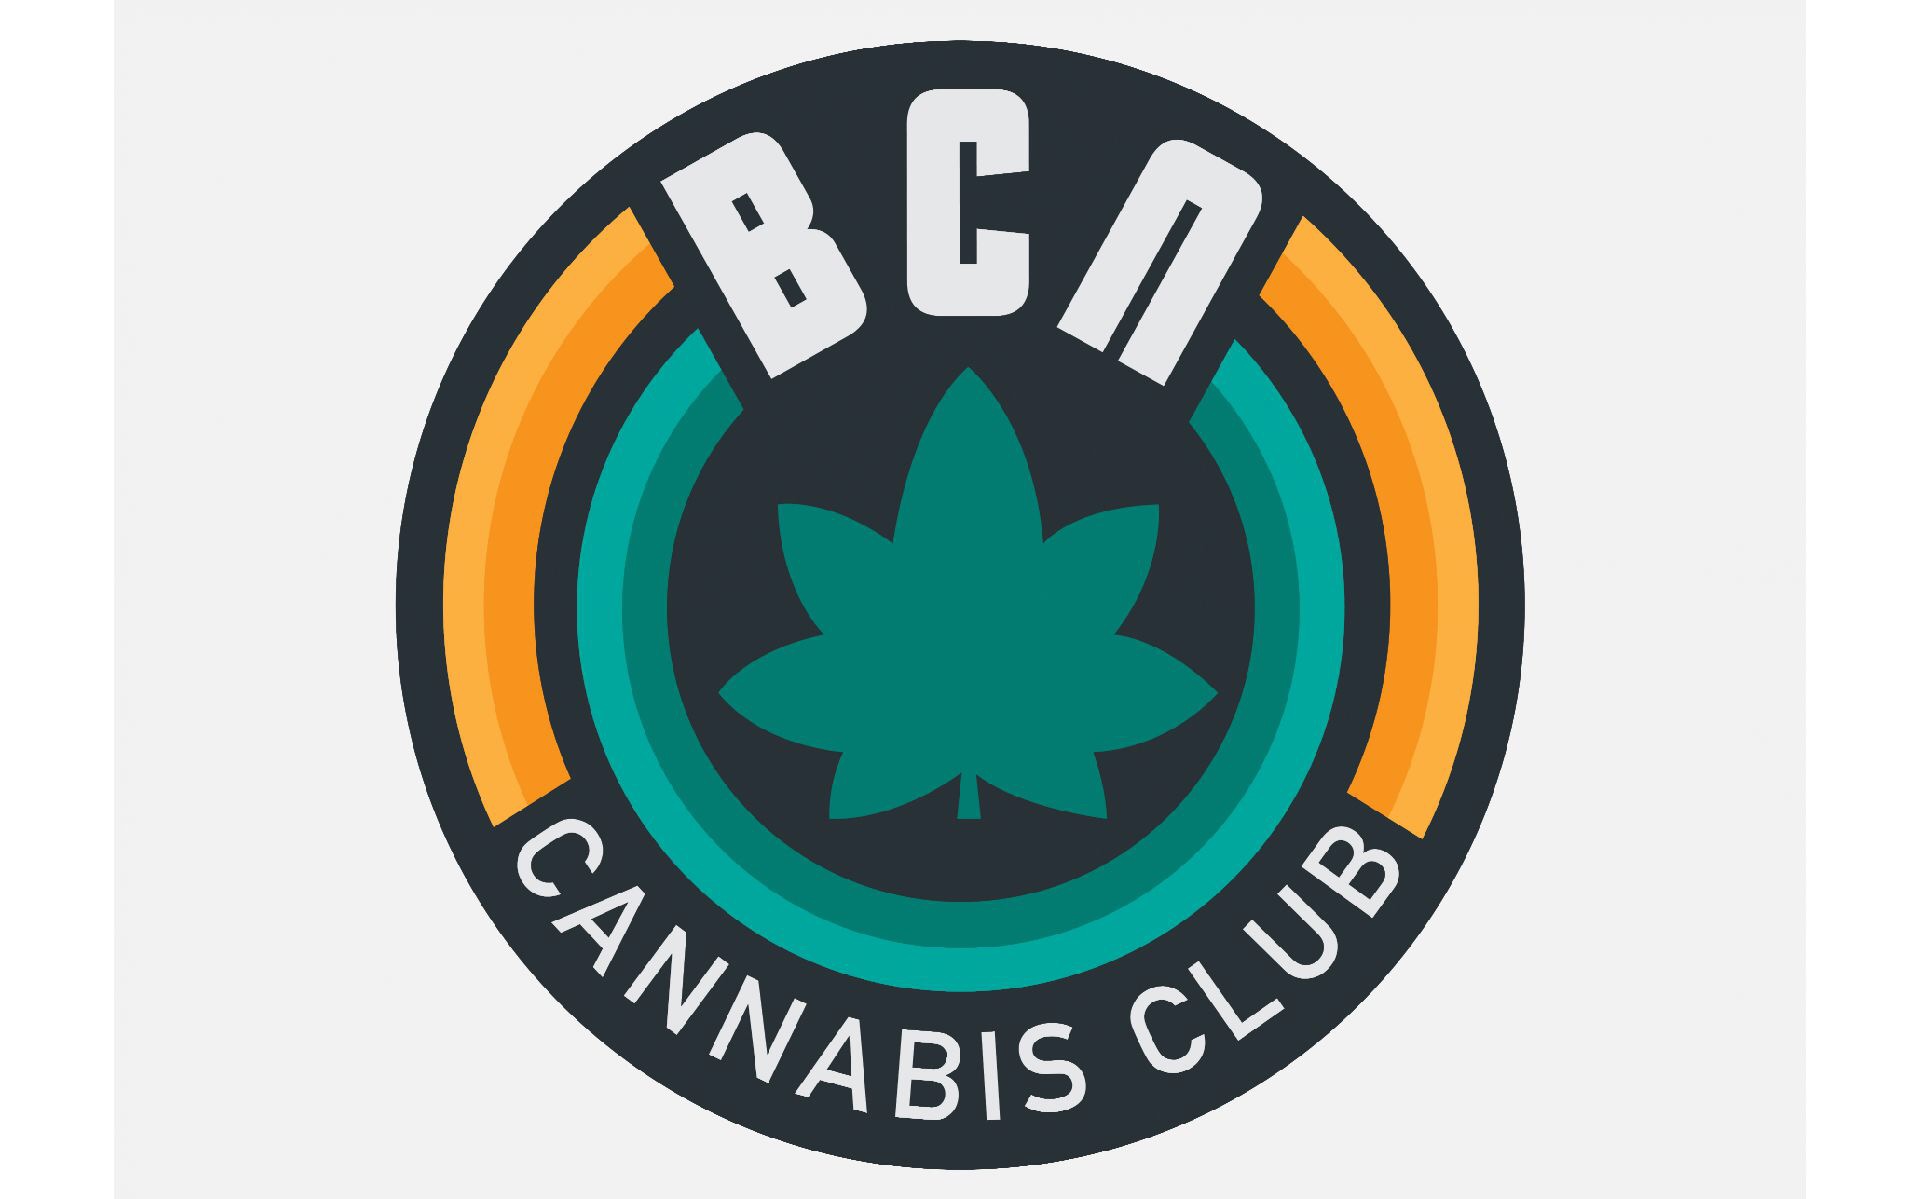 weed club bcn cannabis club barcelona